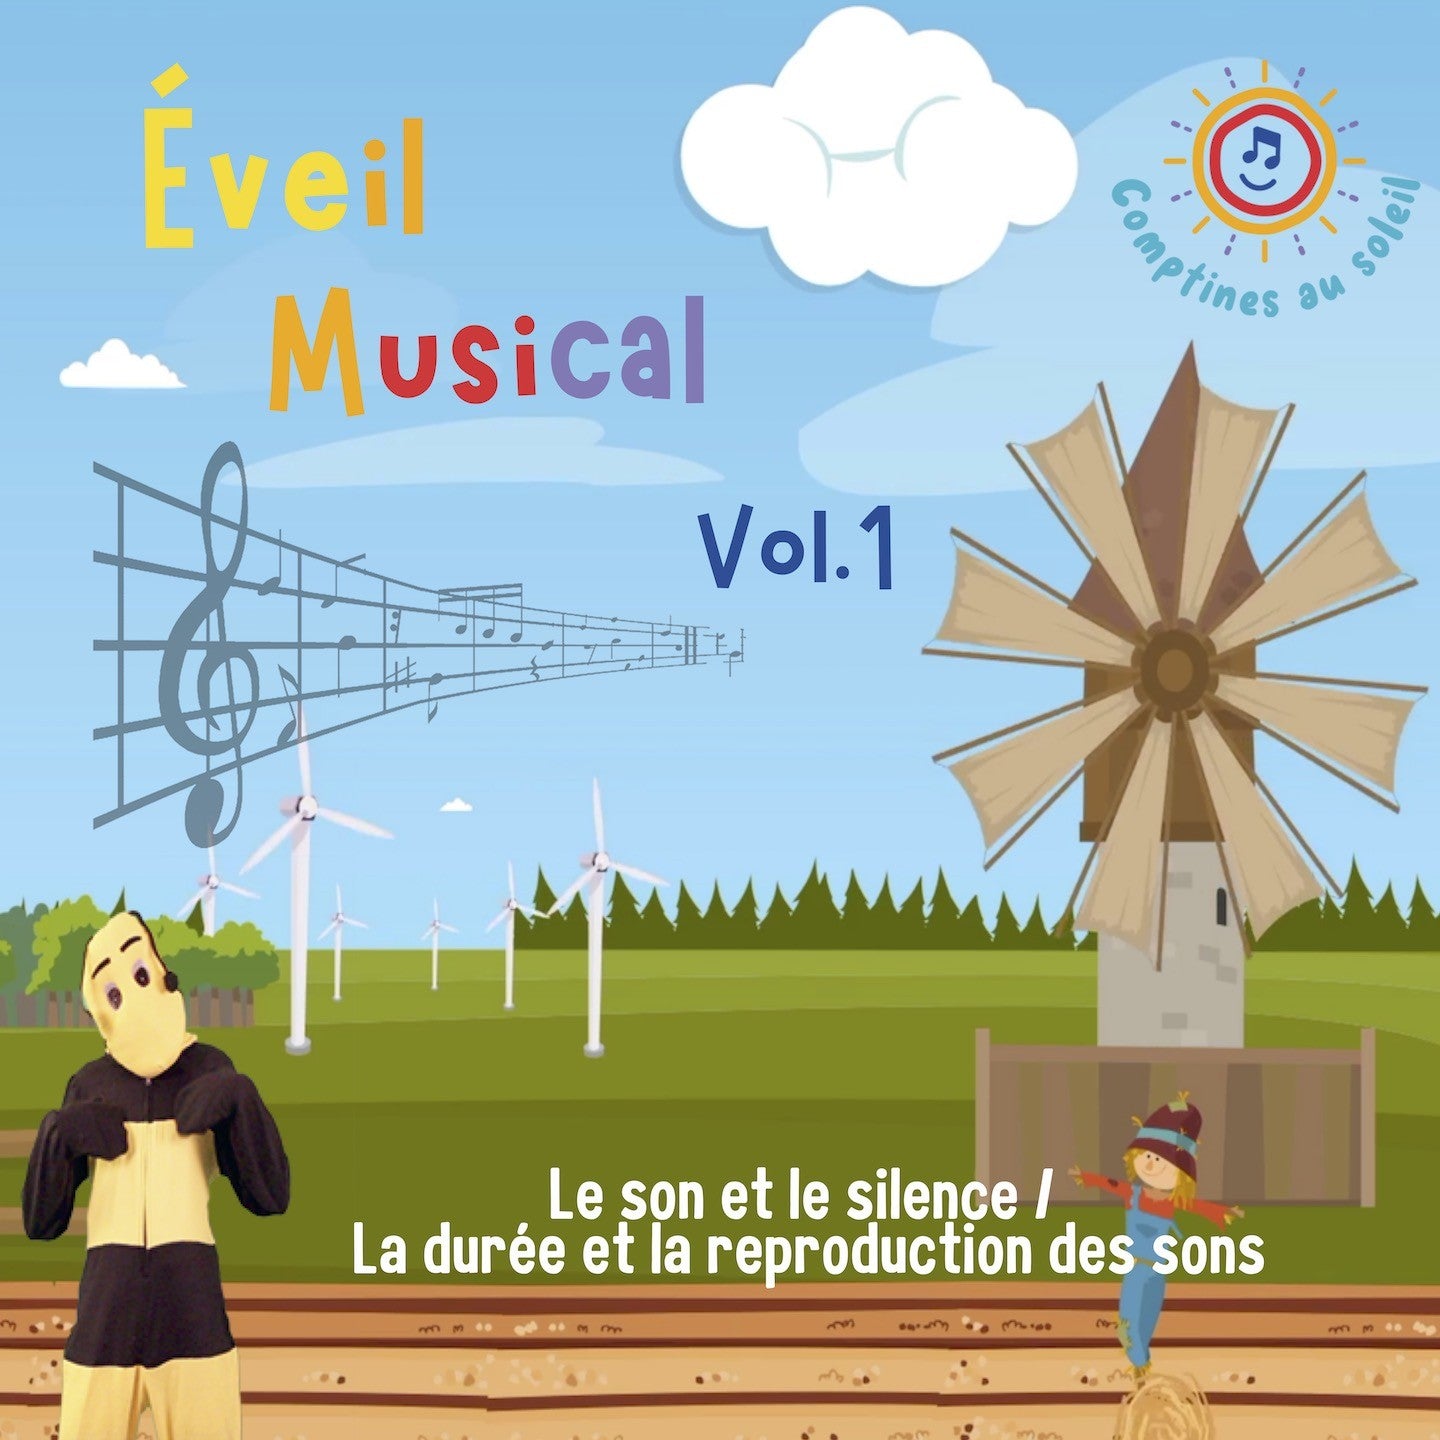 Pochette de : ÉVEIL MUSICAL VOL.1 - COMPTINES AU SOLEIL (CD)